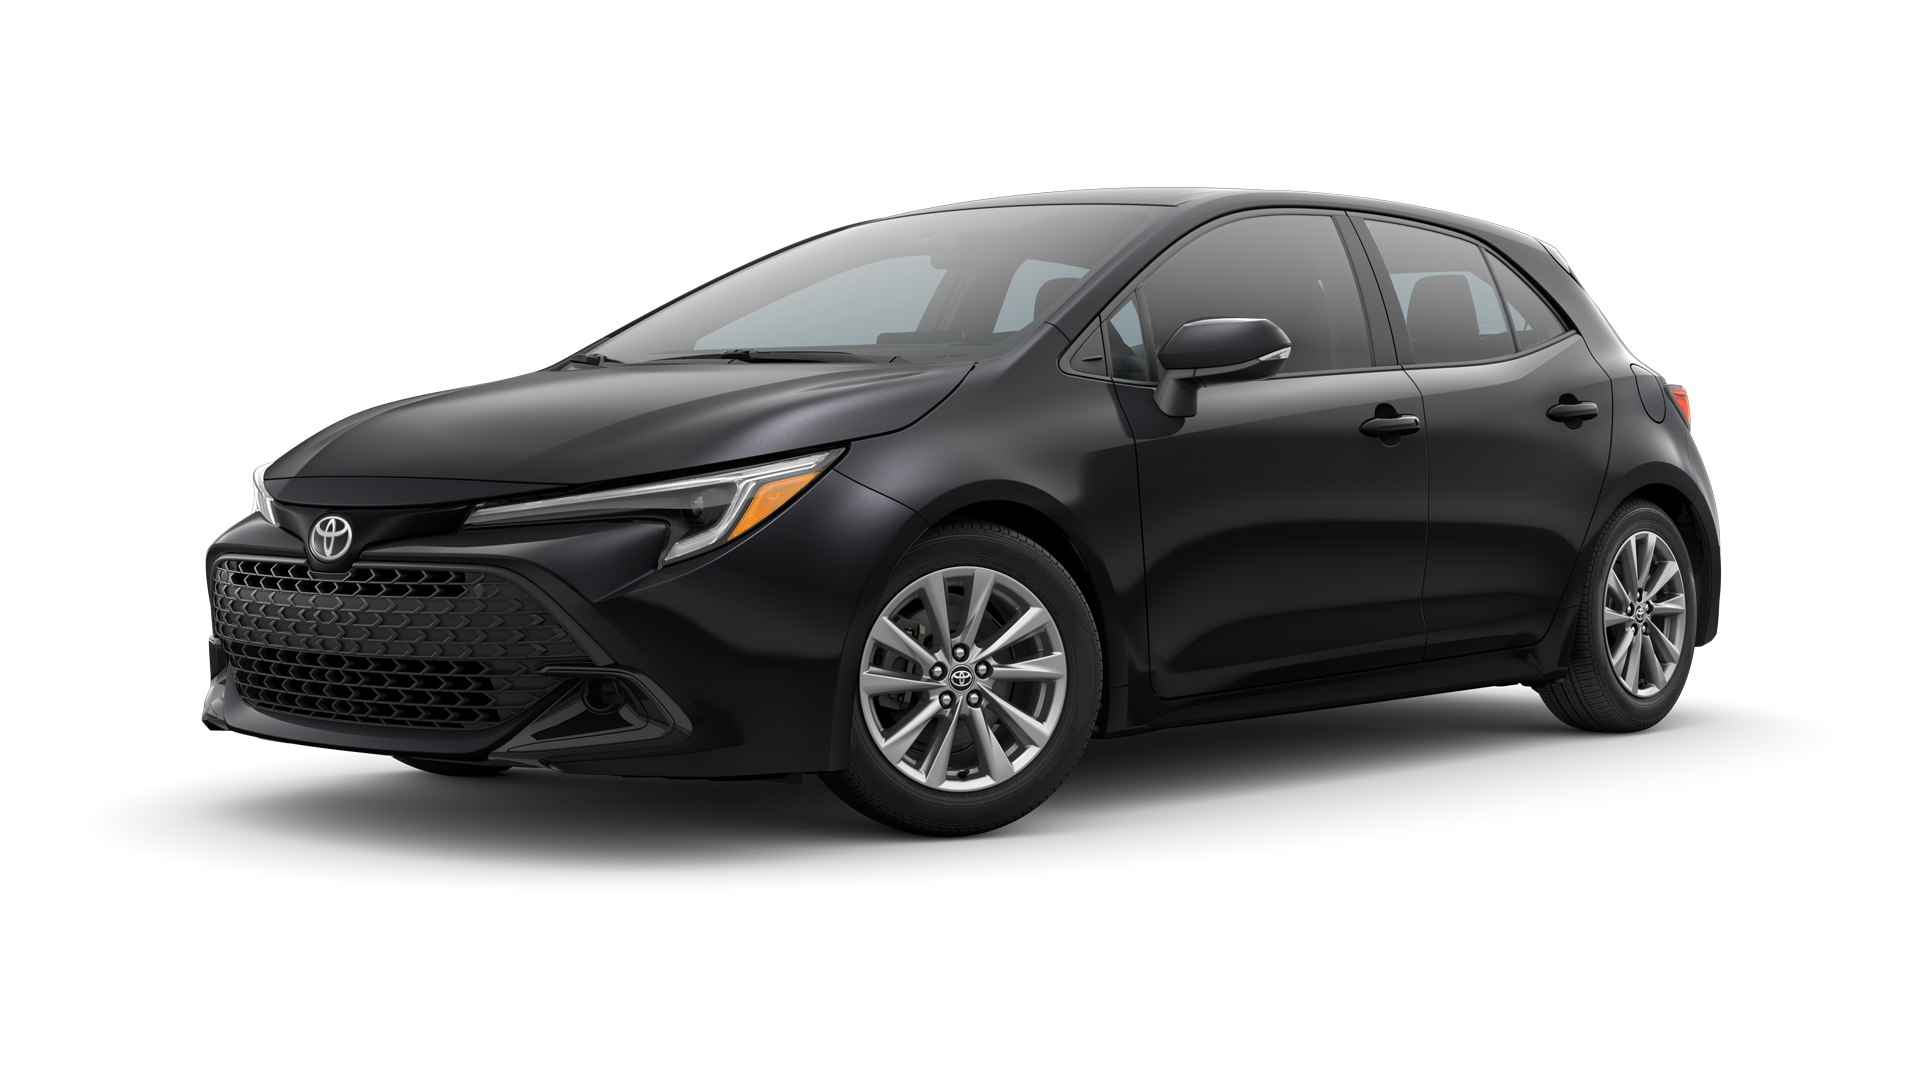 2025 Toyota Hatchback in Midnight Black Metallic.